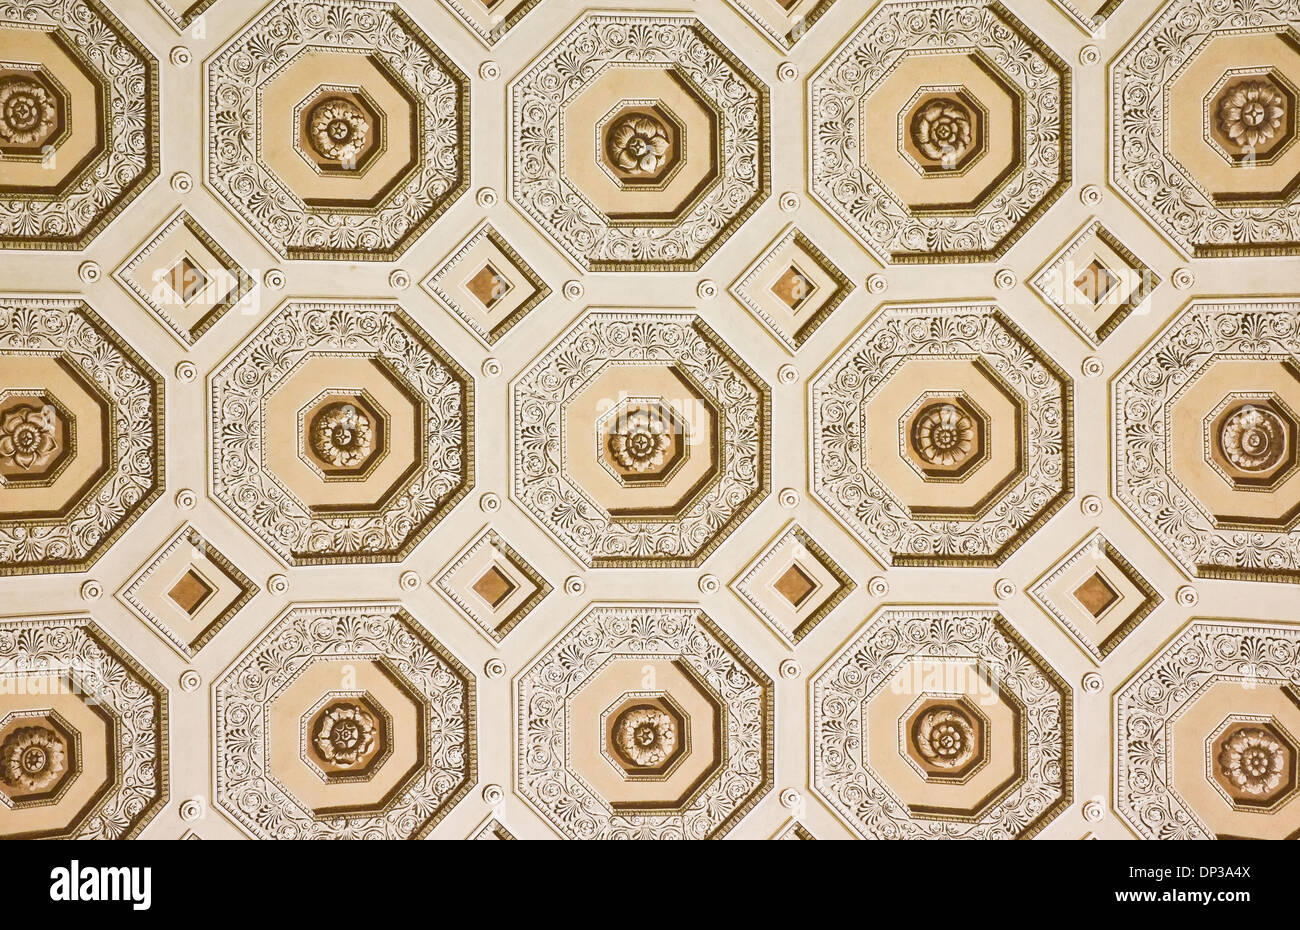 Détails de plafond dans la Cité du Vatican Rome Italie Banque D'Images